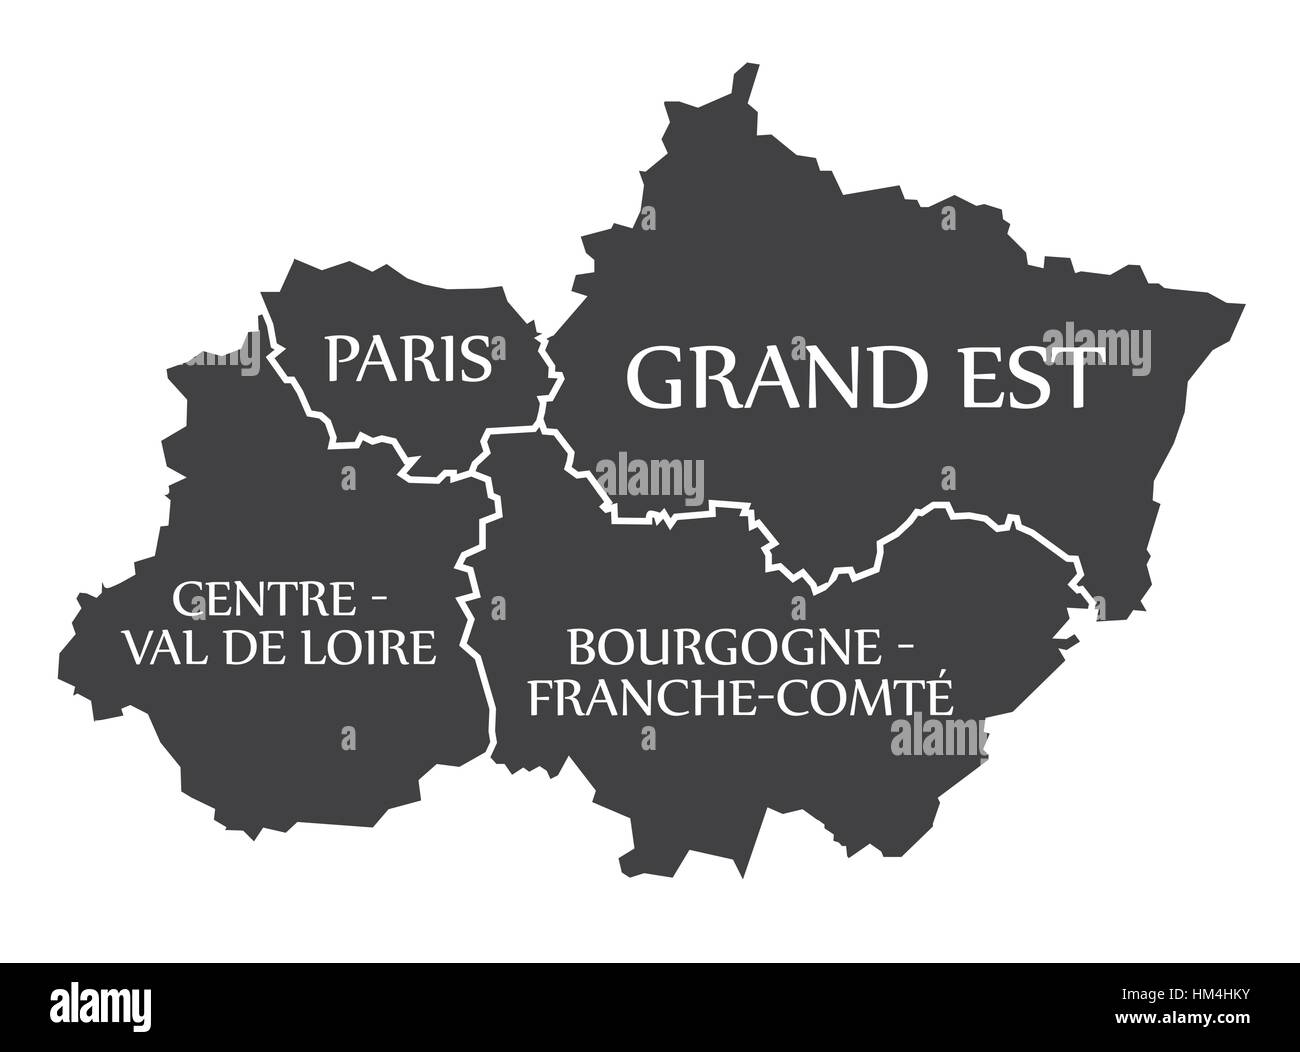 Paris - Grand Est - Centre - Val de Loire - Bourgogne Karte Frankreich Abbildung Stock Vektor